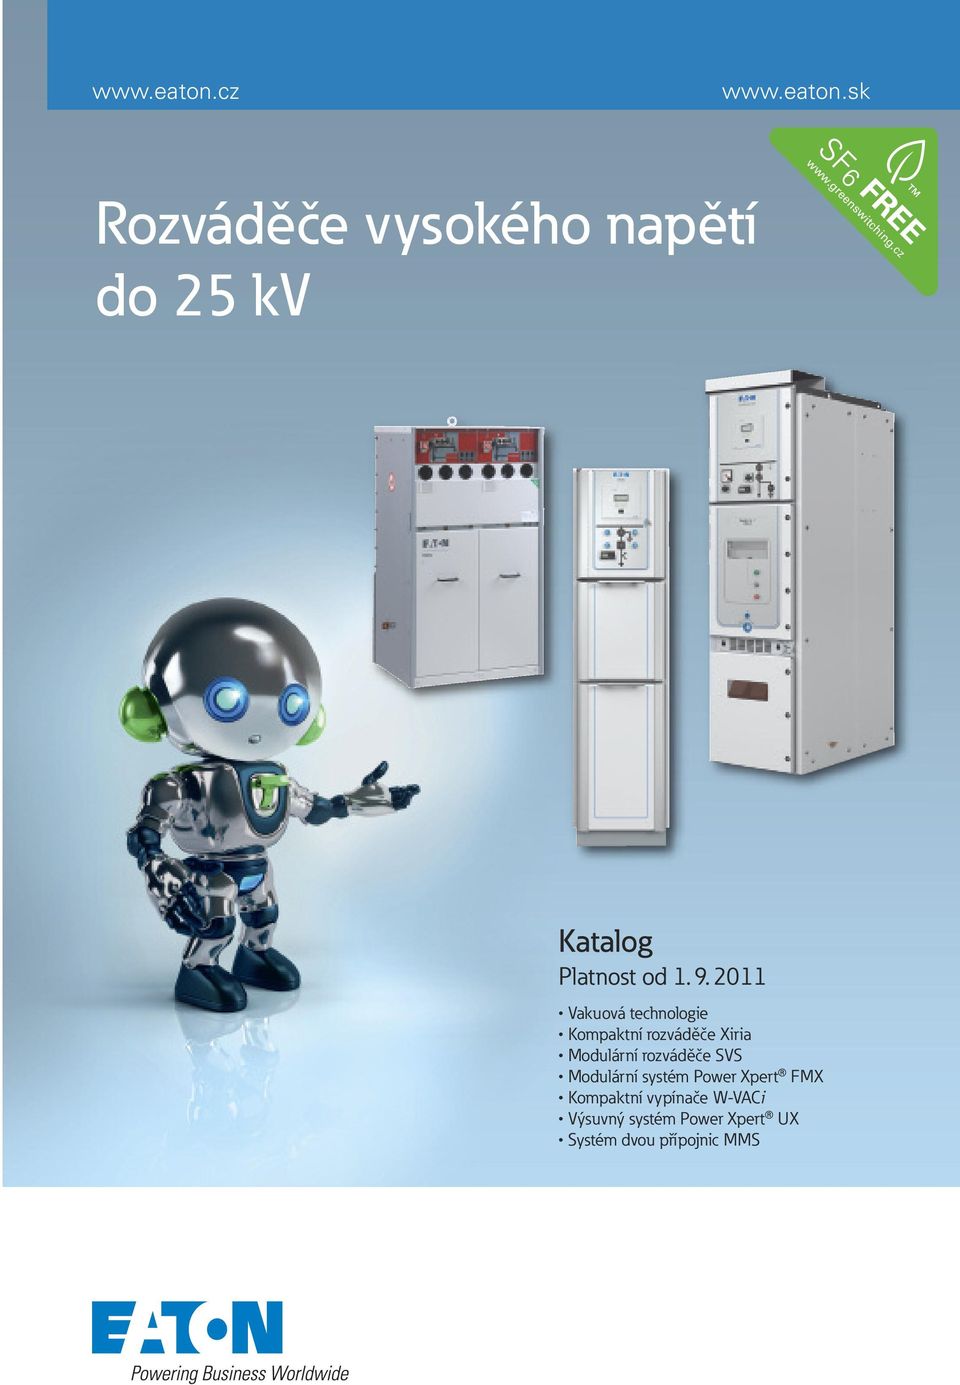 2011 Vakuovátechnologie KompaktnírozváděčeXiria ModulárnírozváděčeSVS